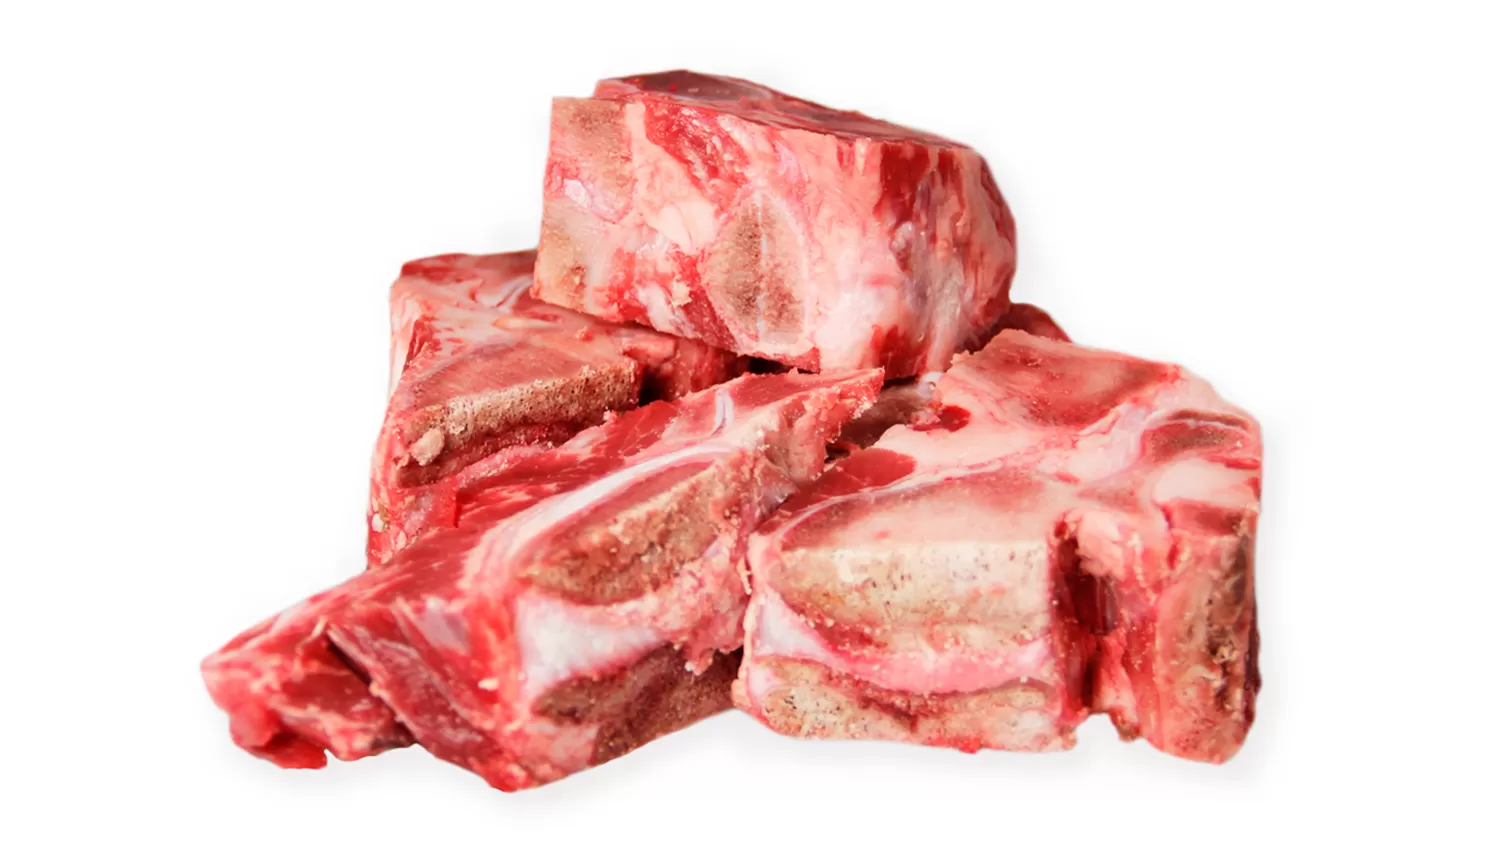 Plan para bajar la inflación: la carne a $ 149 el kilo es hueso y grasa, afirman los carniceros